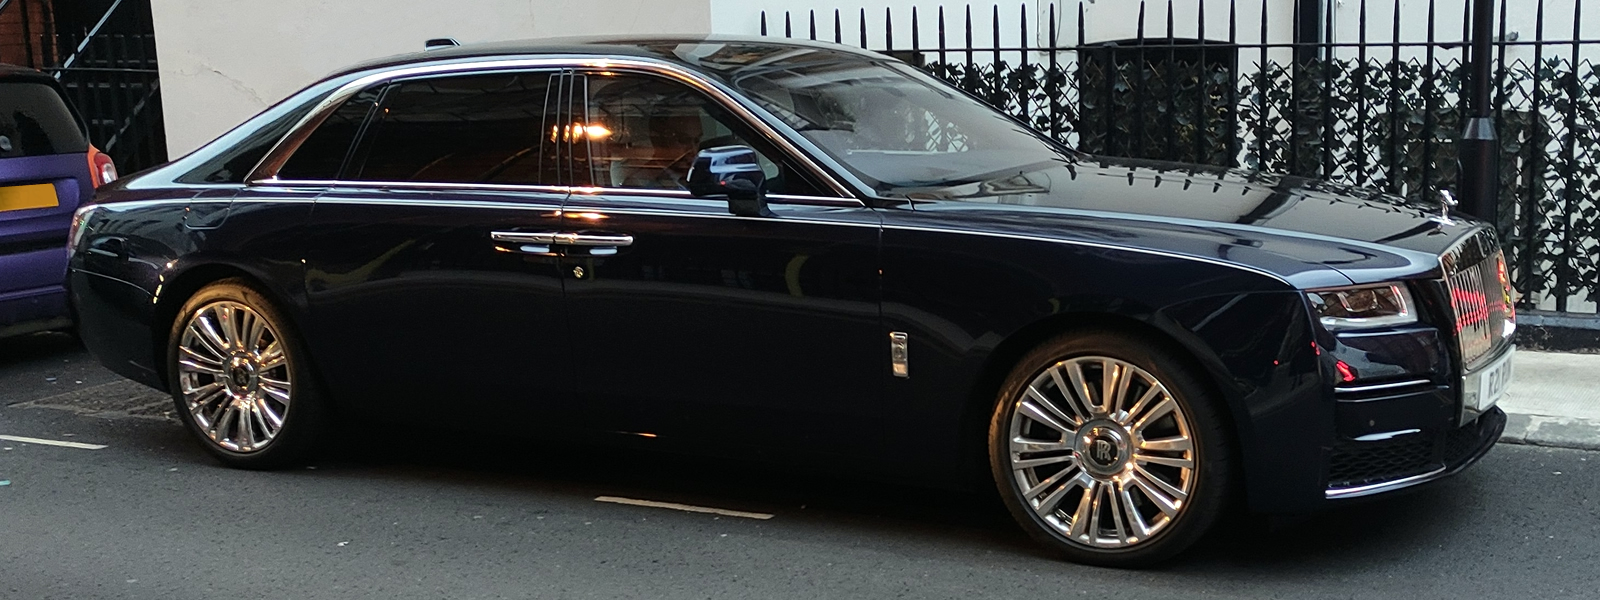 Black Rolls-Royce Phantom Series II